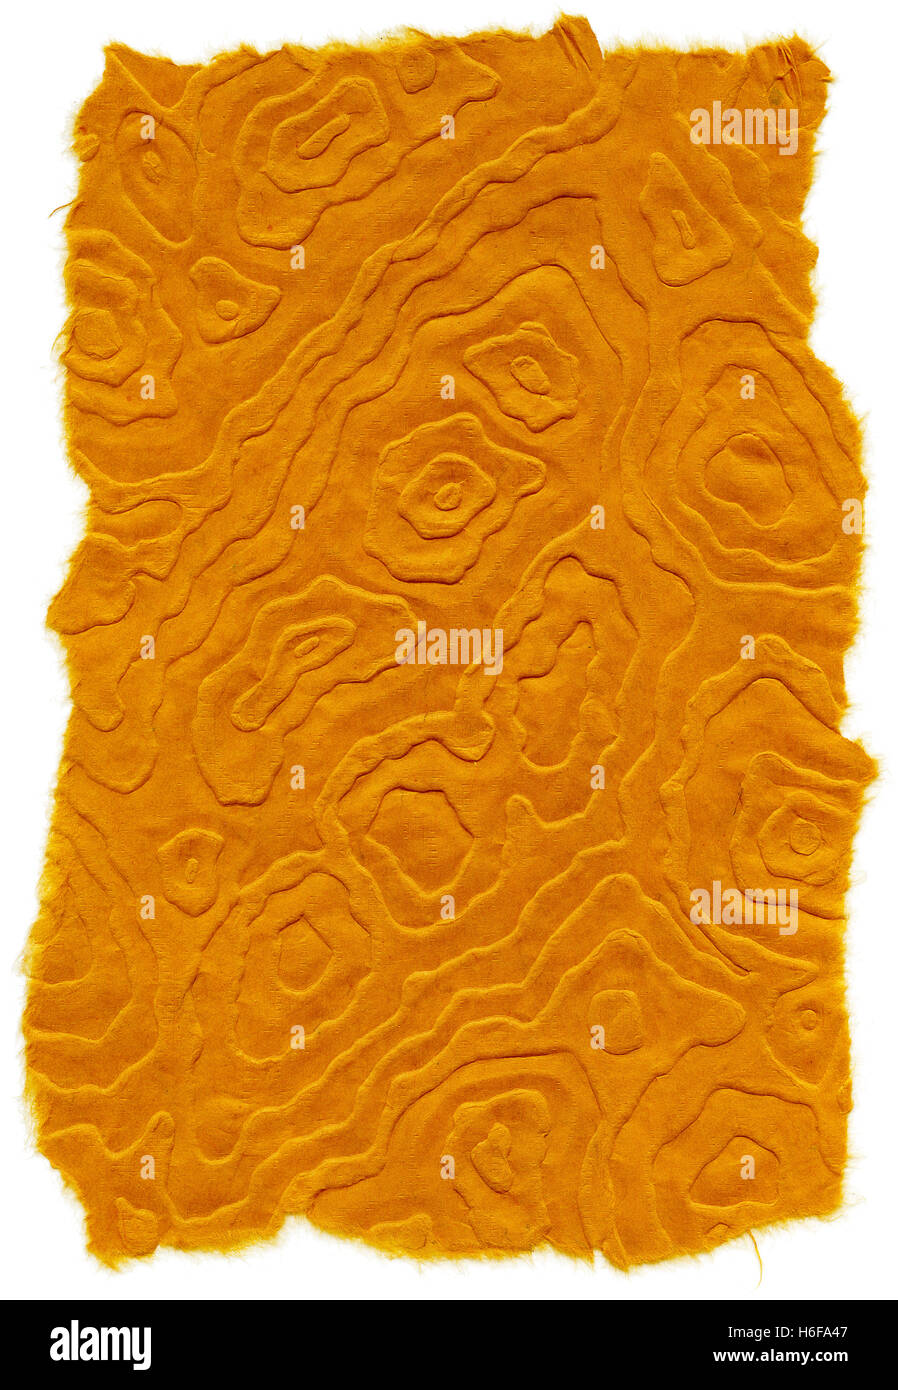 Textur des orange Reispapier mit Mandala-Muster und zerrissene Kanten. Isoliert auf weißem Hintergrund. Bei 1200dpi mit einer Pro gescannt Stockfoto